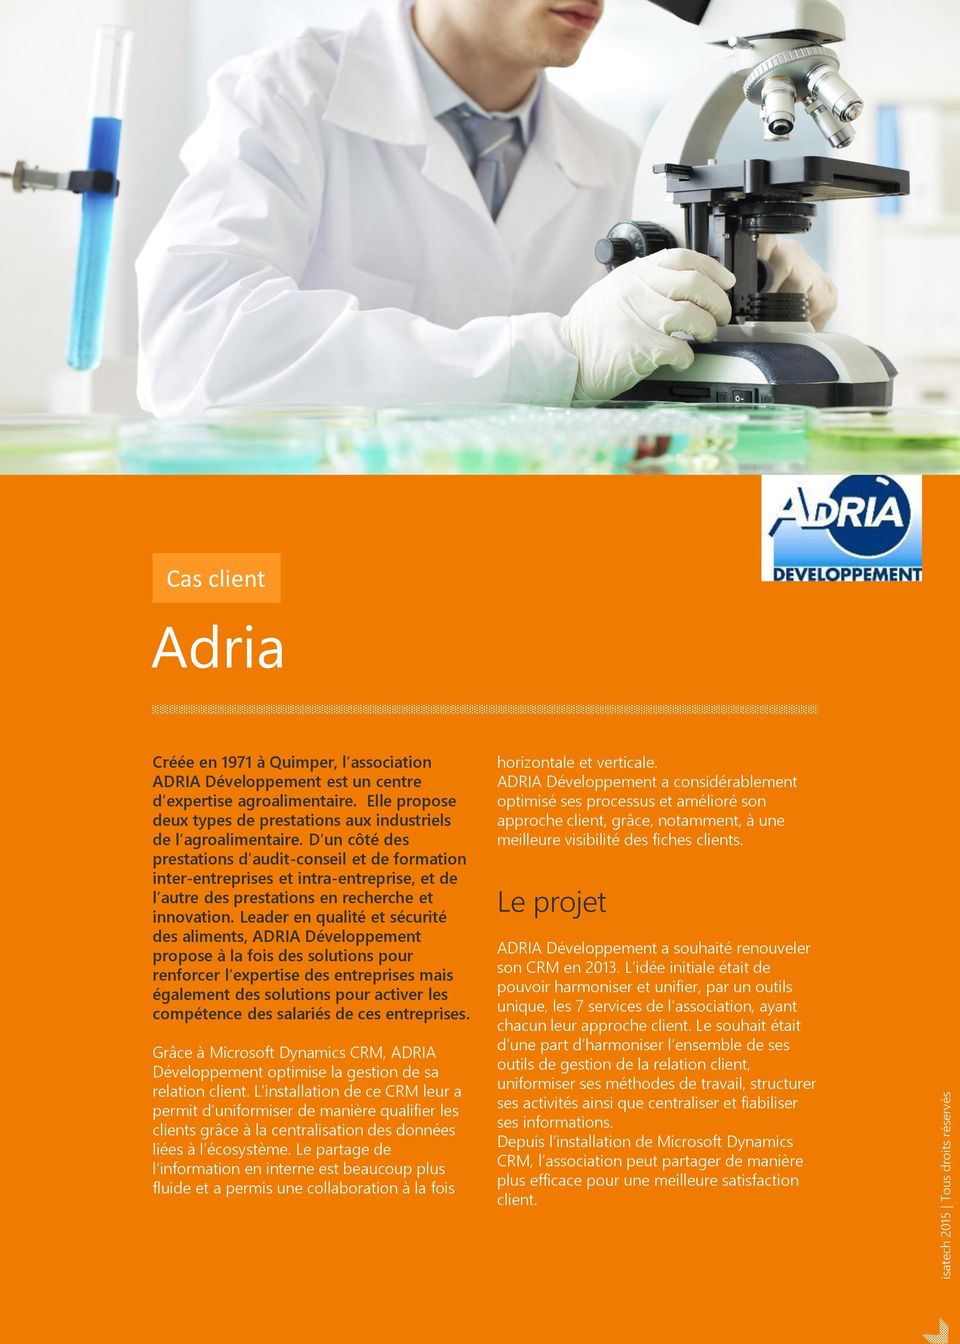 Leader en qualité et sécurité des aliments, ADRIA Développement propose à la fois des solutions pour renforcer l expertise des entreprises mais également des solutions pour activer les compétence des